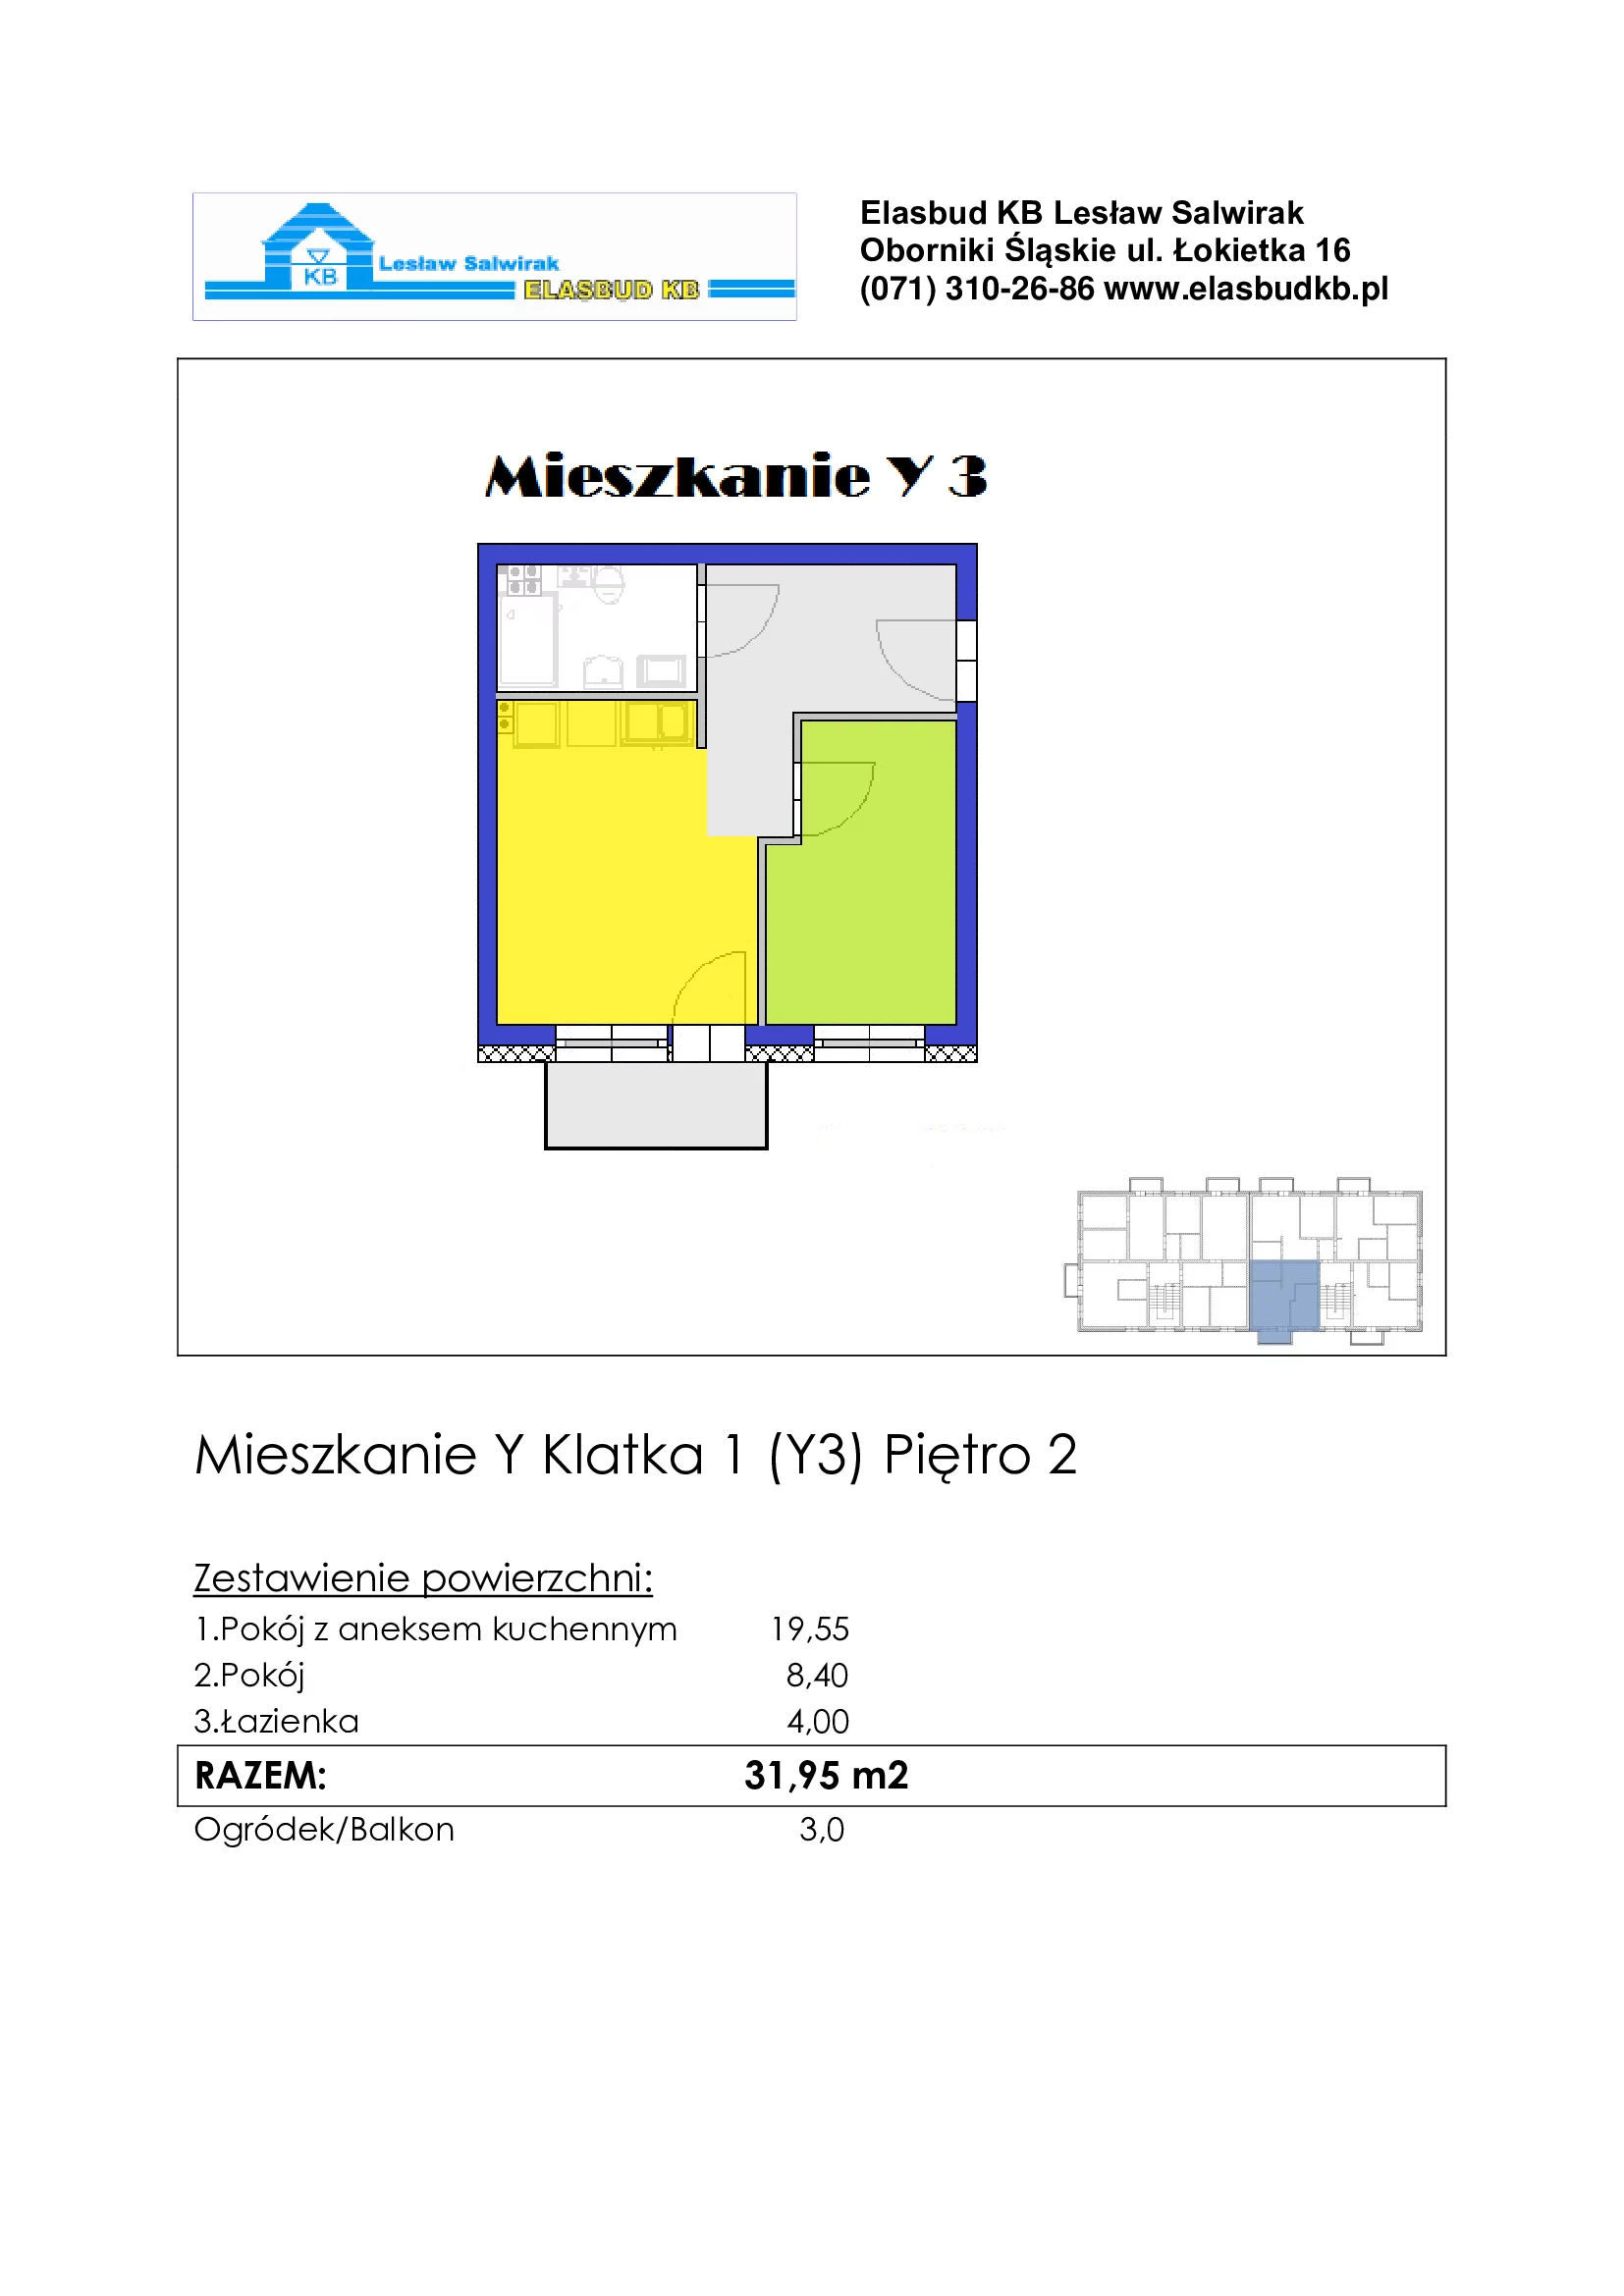 Mieszkanie 31,95 m², piętro 2, oferta nr Y3, Grzybowa 2, Oborniki Śląskie, ul.Grzybowa